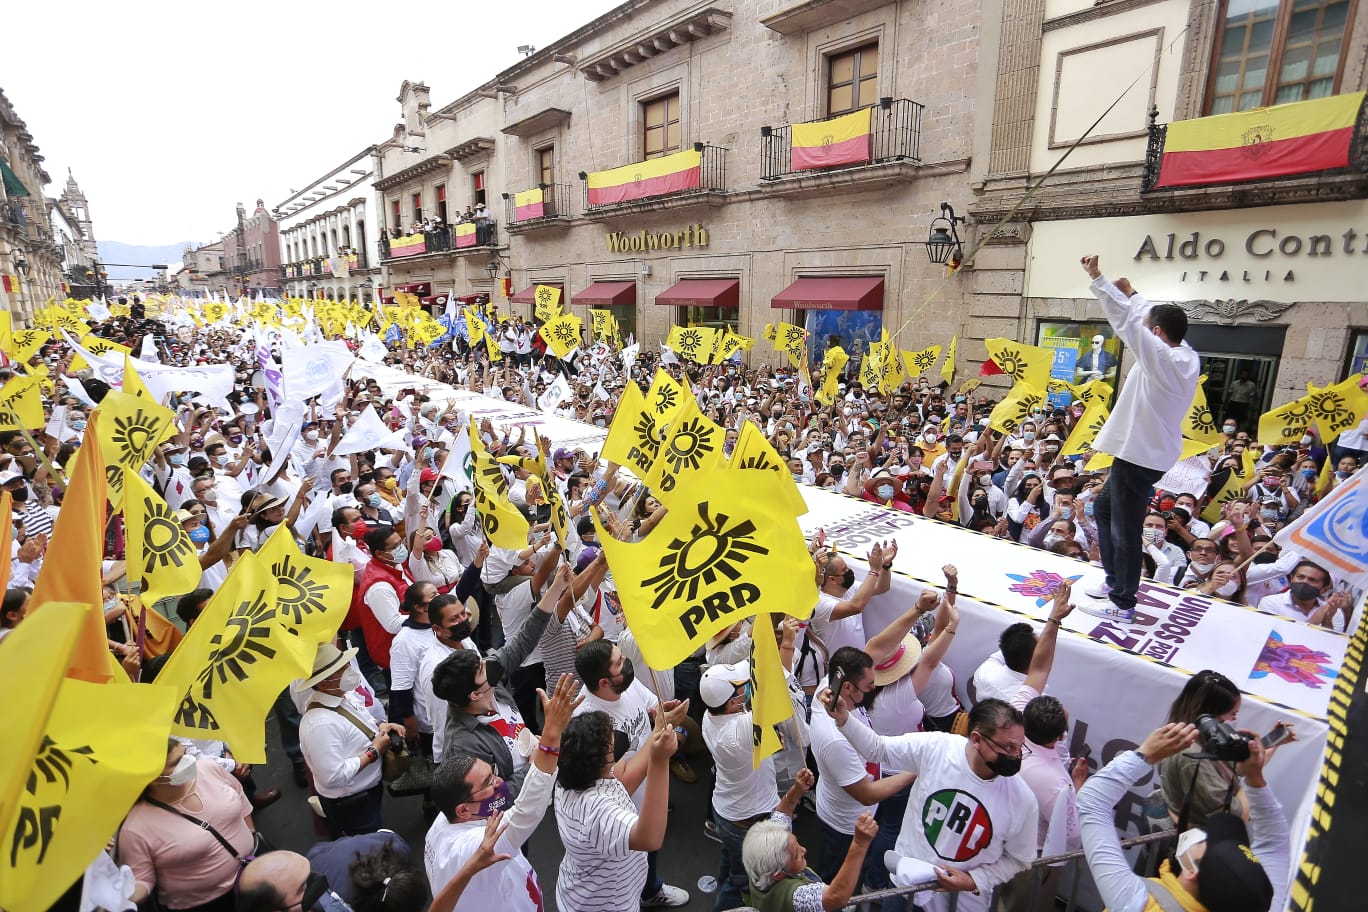 Carlos Herrera cierra campaña electoral en Michoacán